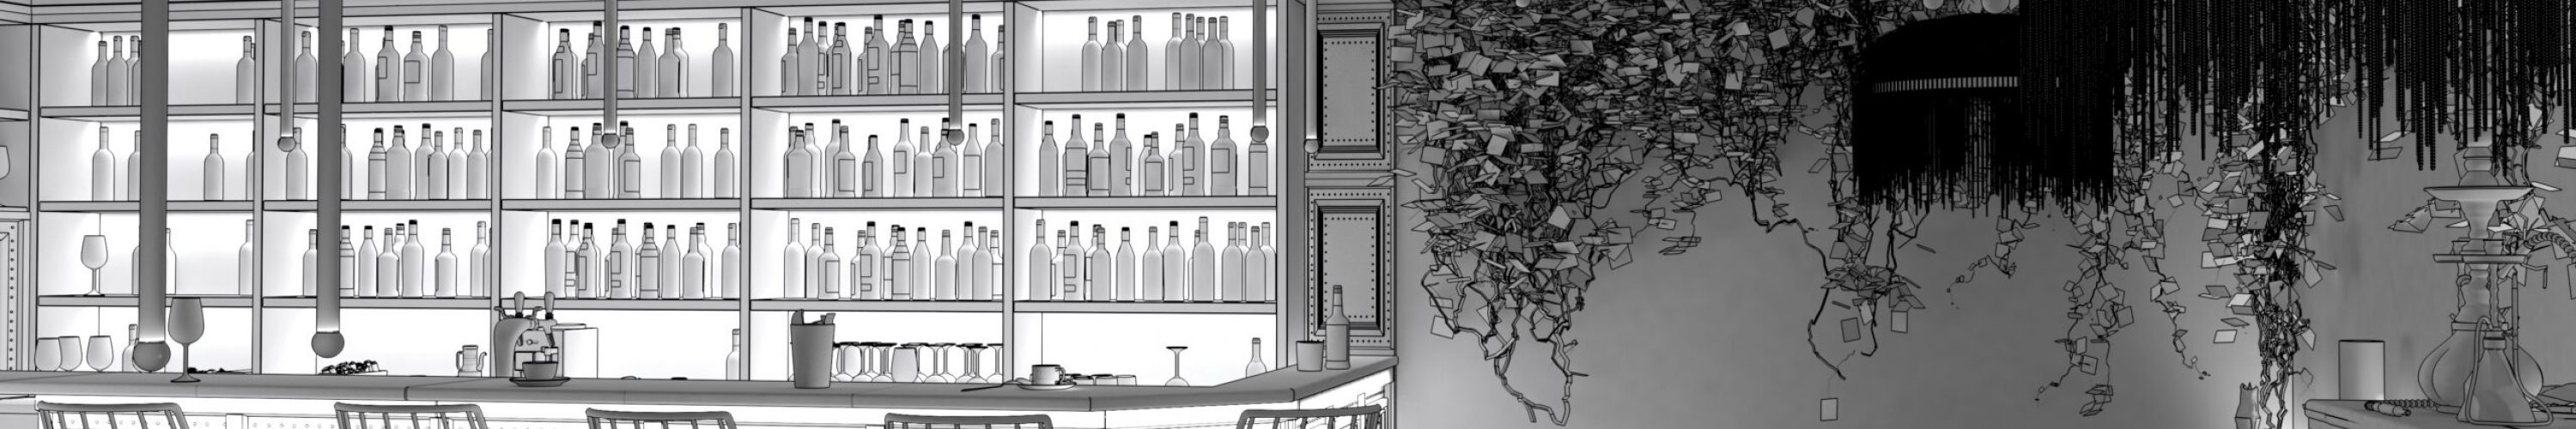 restaurant-interior-visualization-3d-illustration (1)